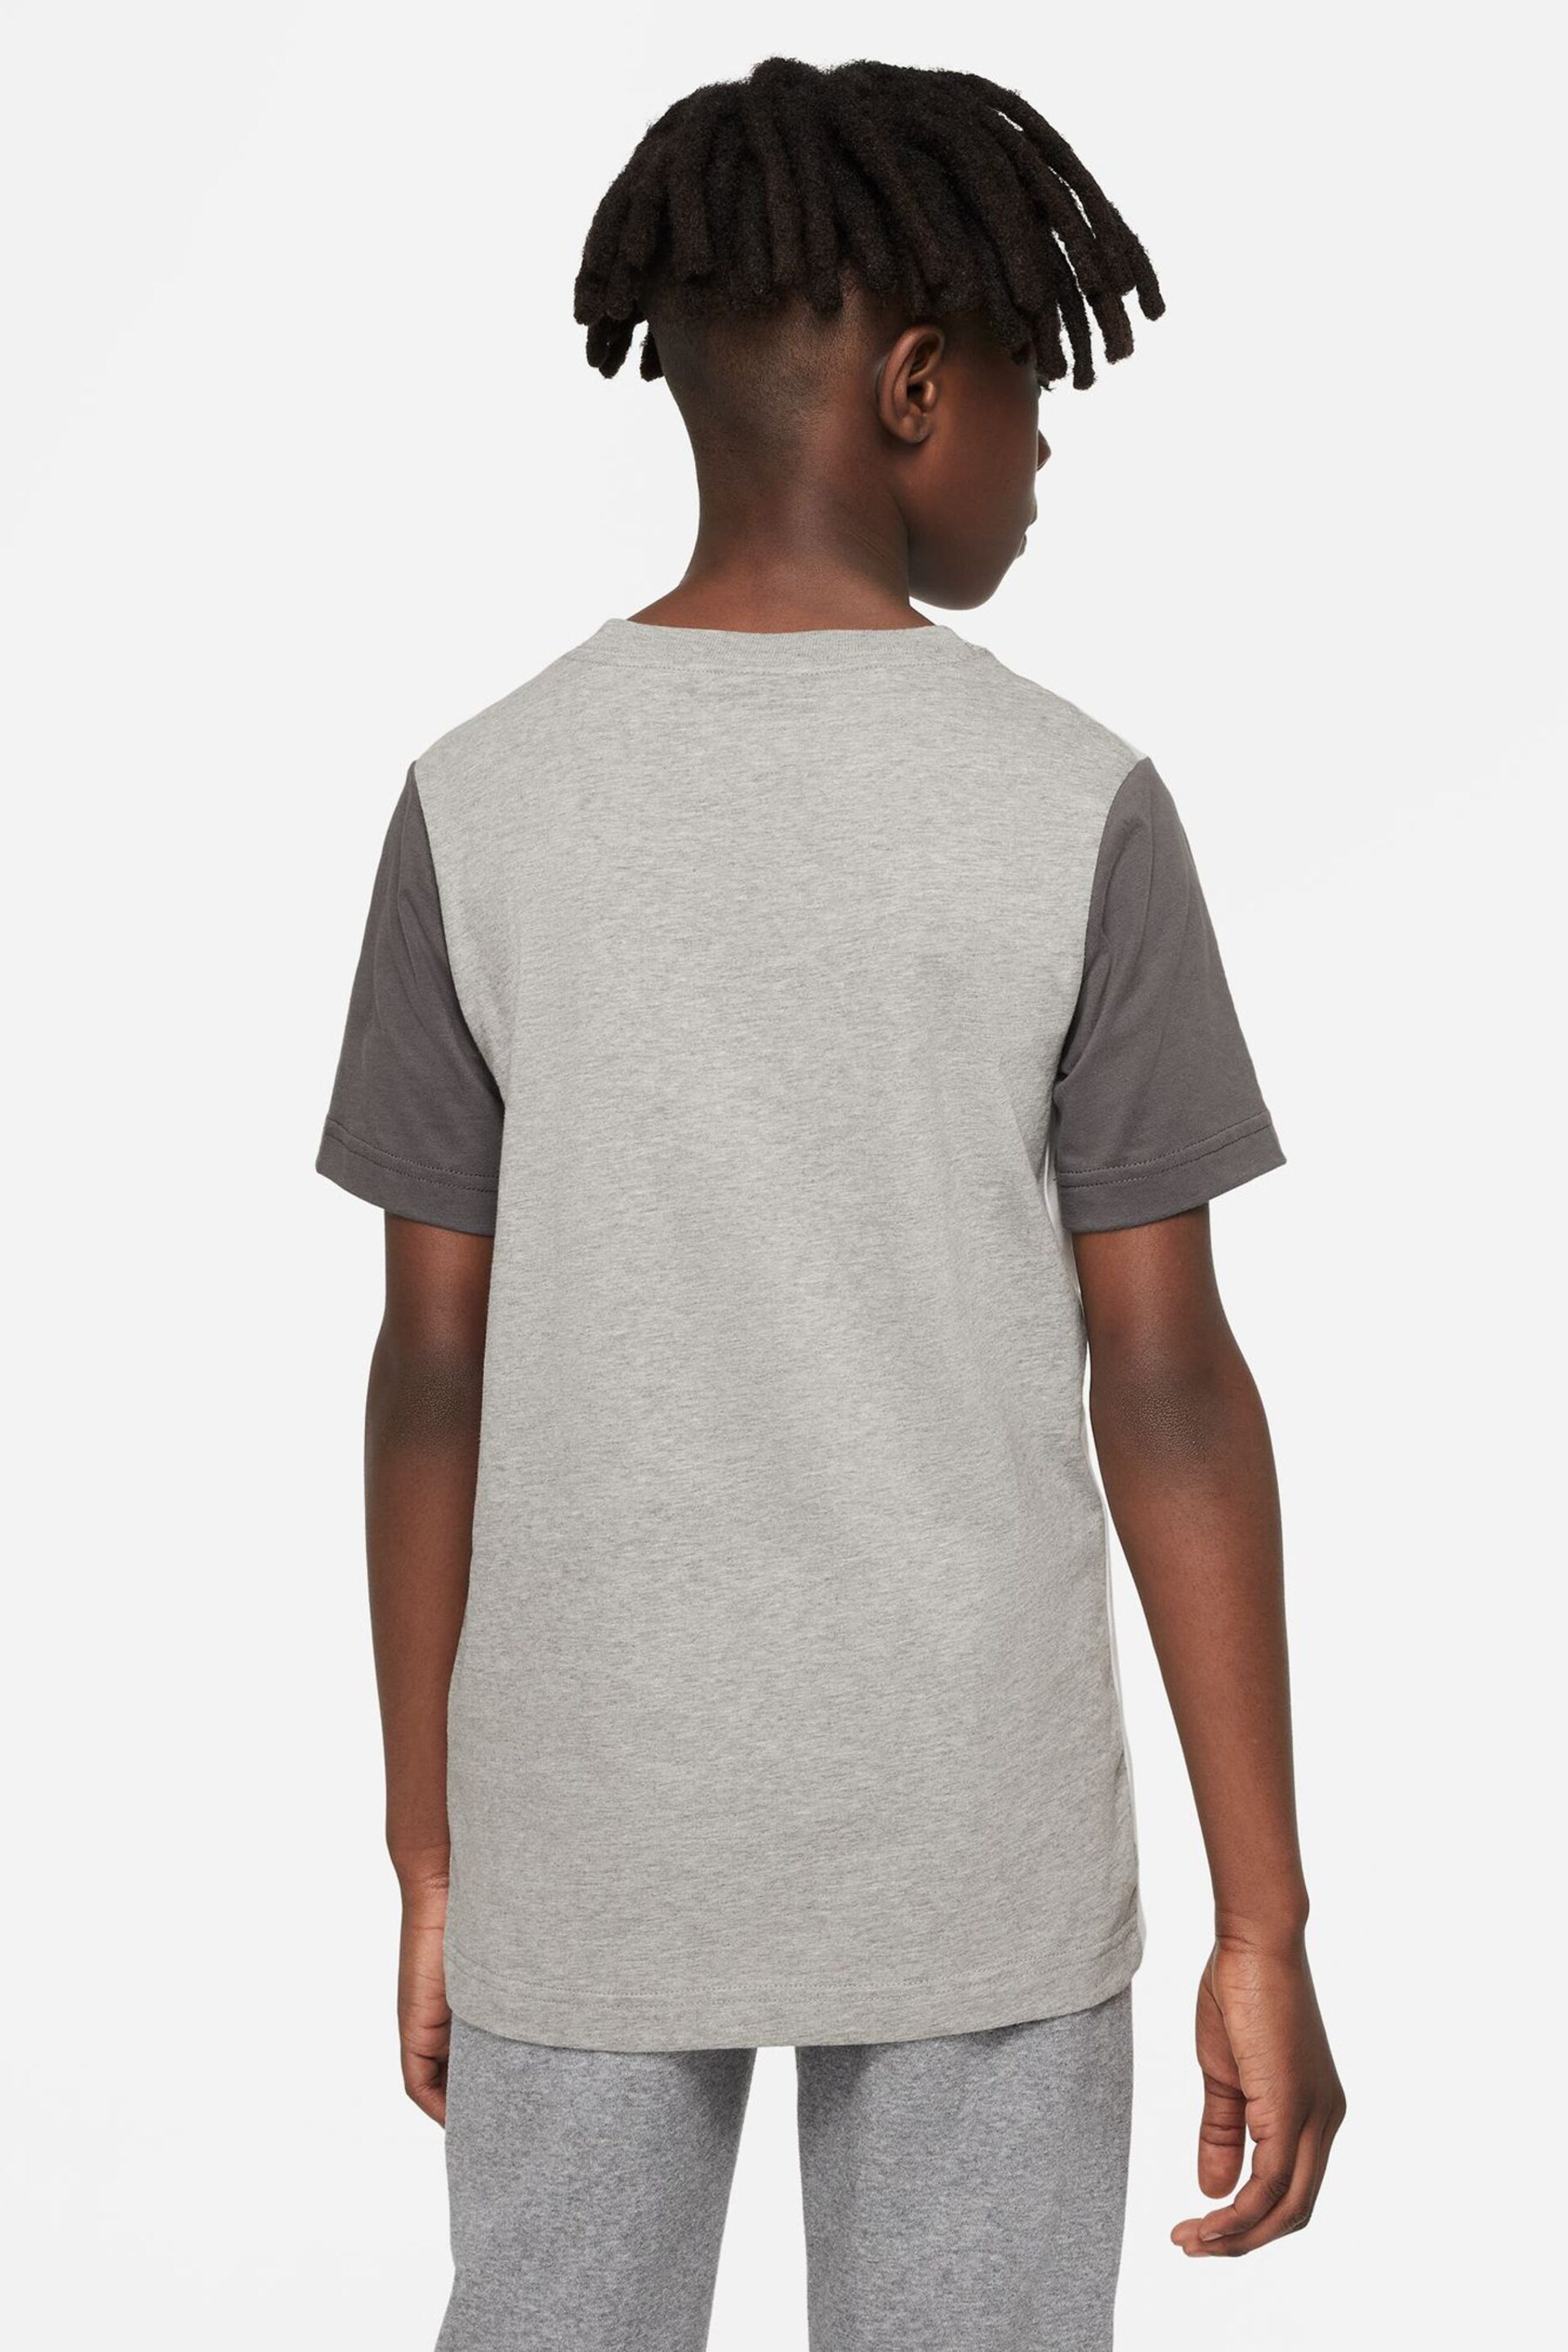 Nike Grey Hybrid T-Shirt - Image 2 of 4